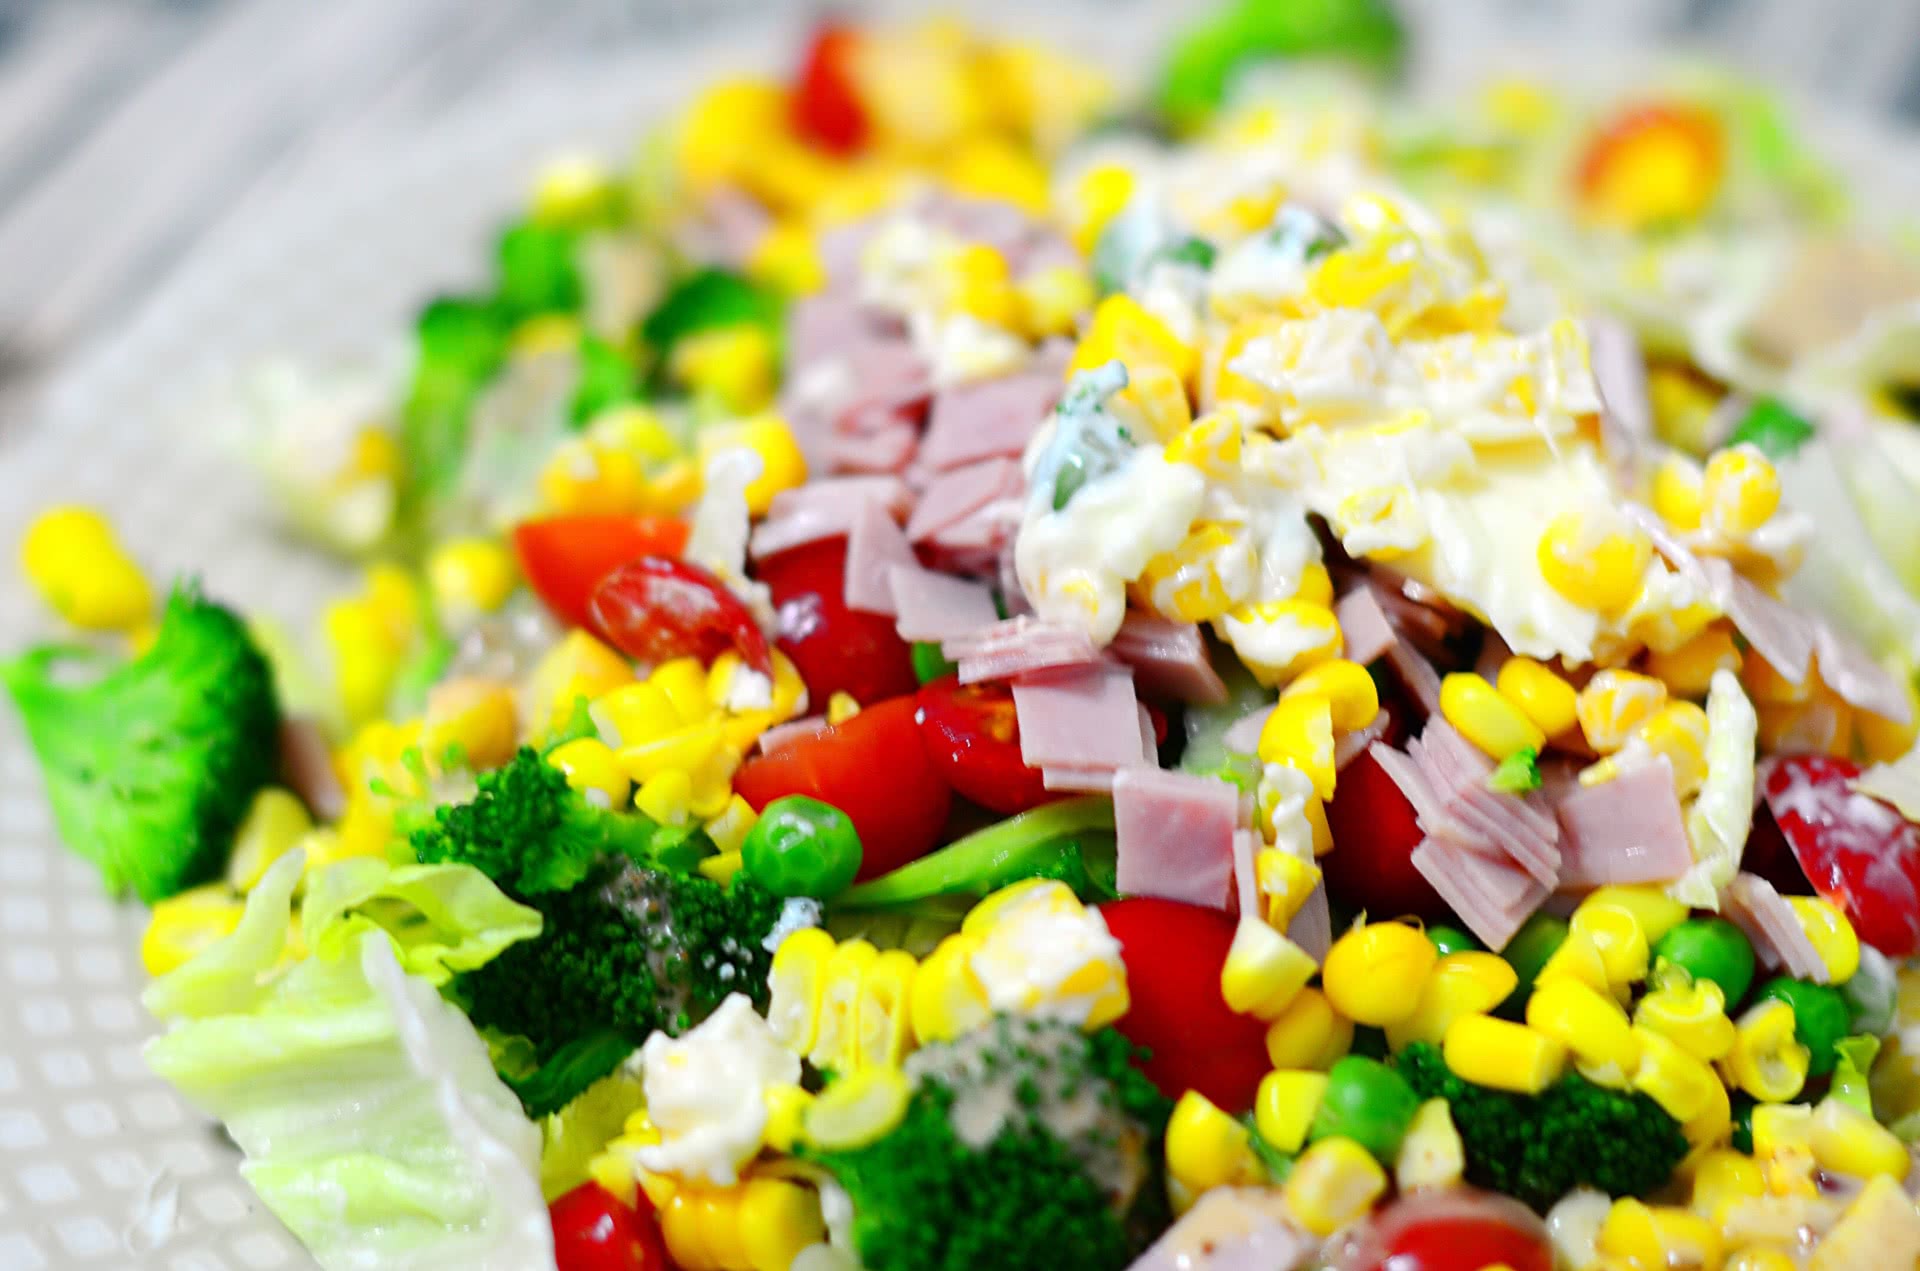 蔬菜沙拉简单做法 - 雪炭网